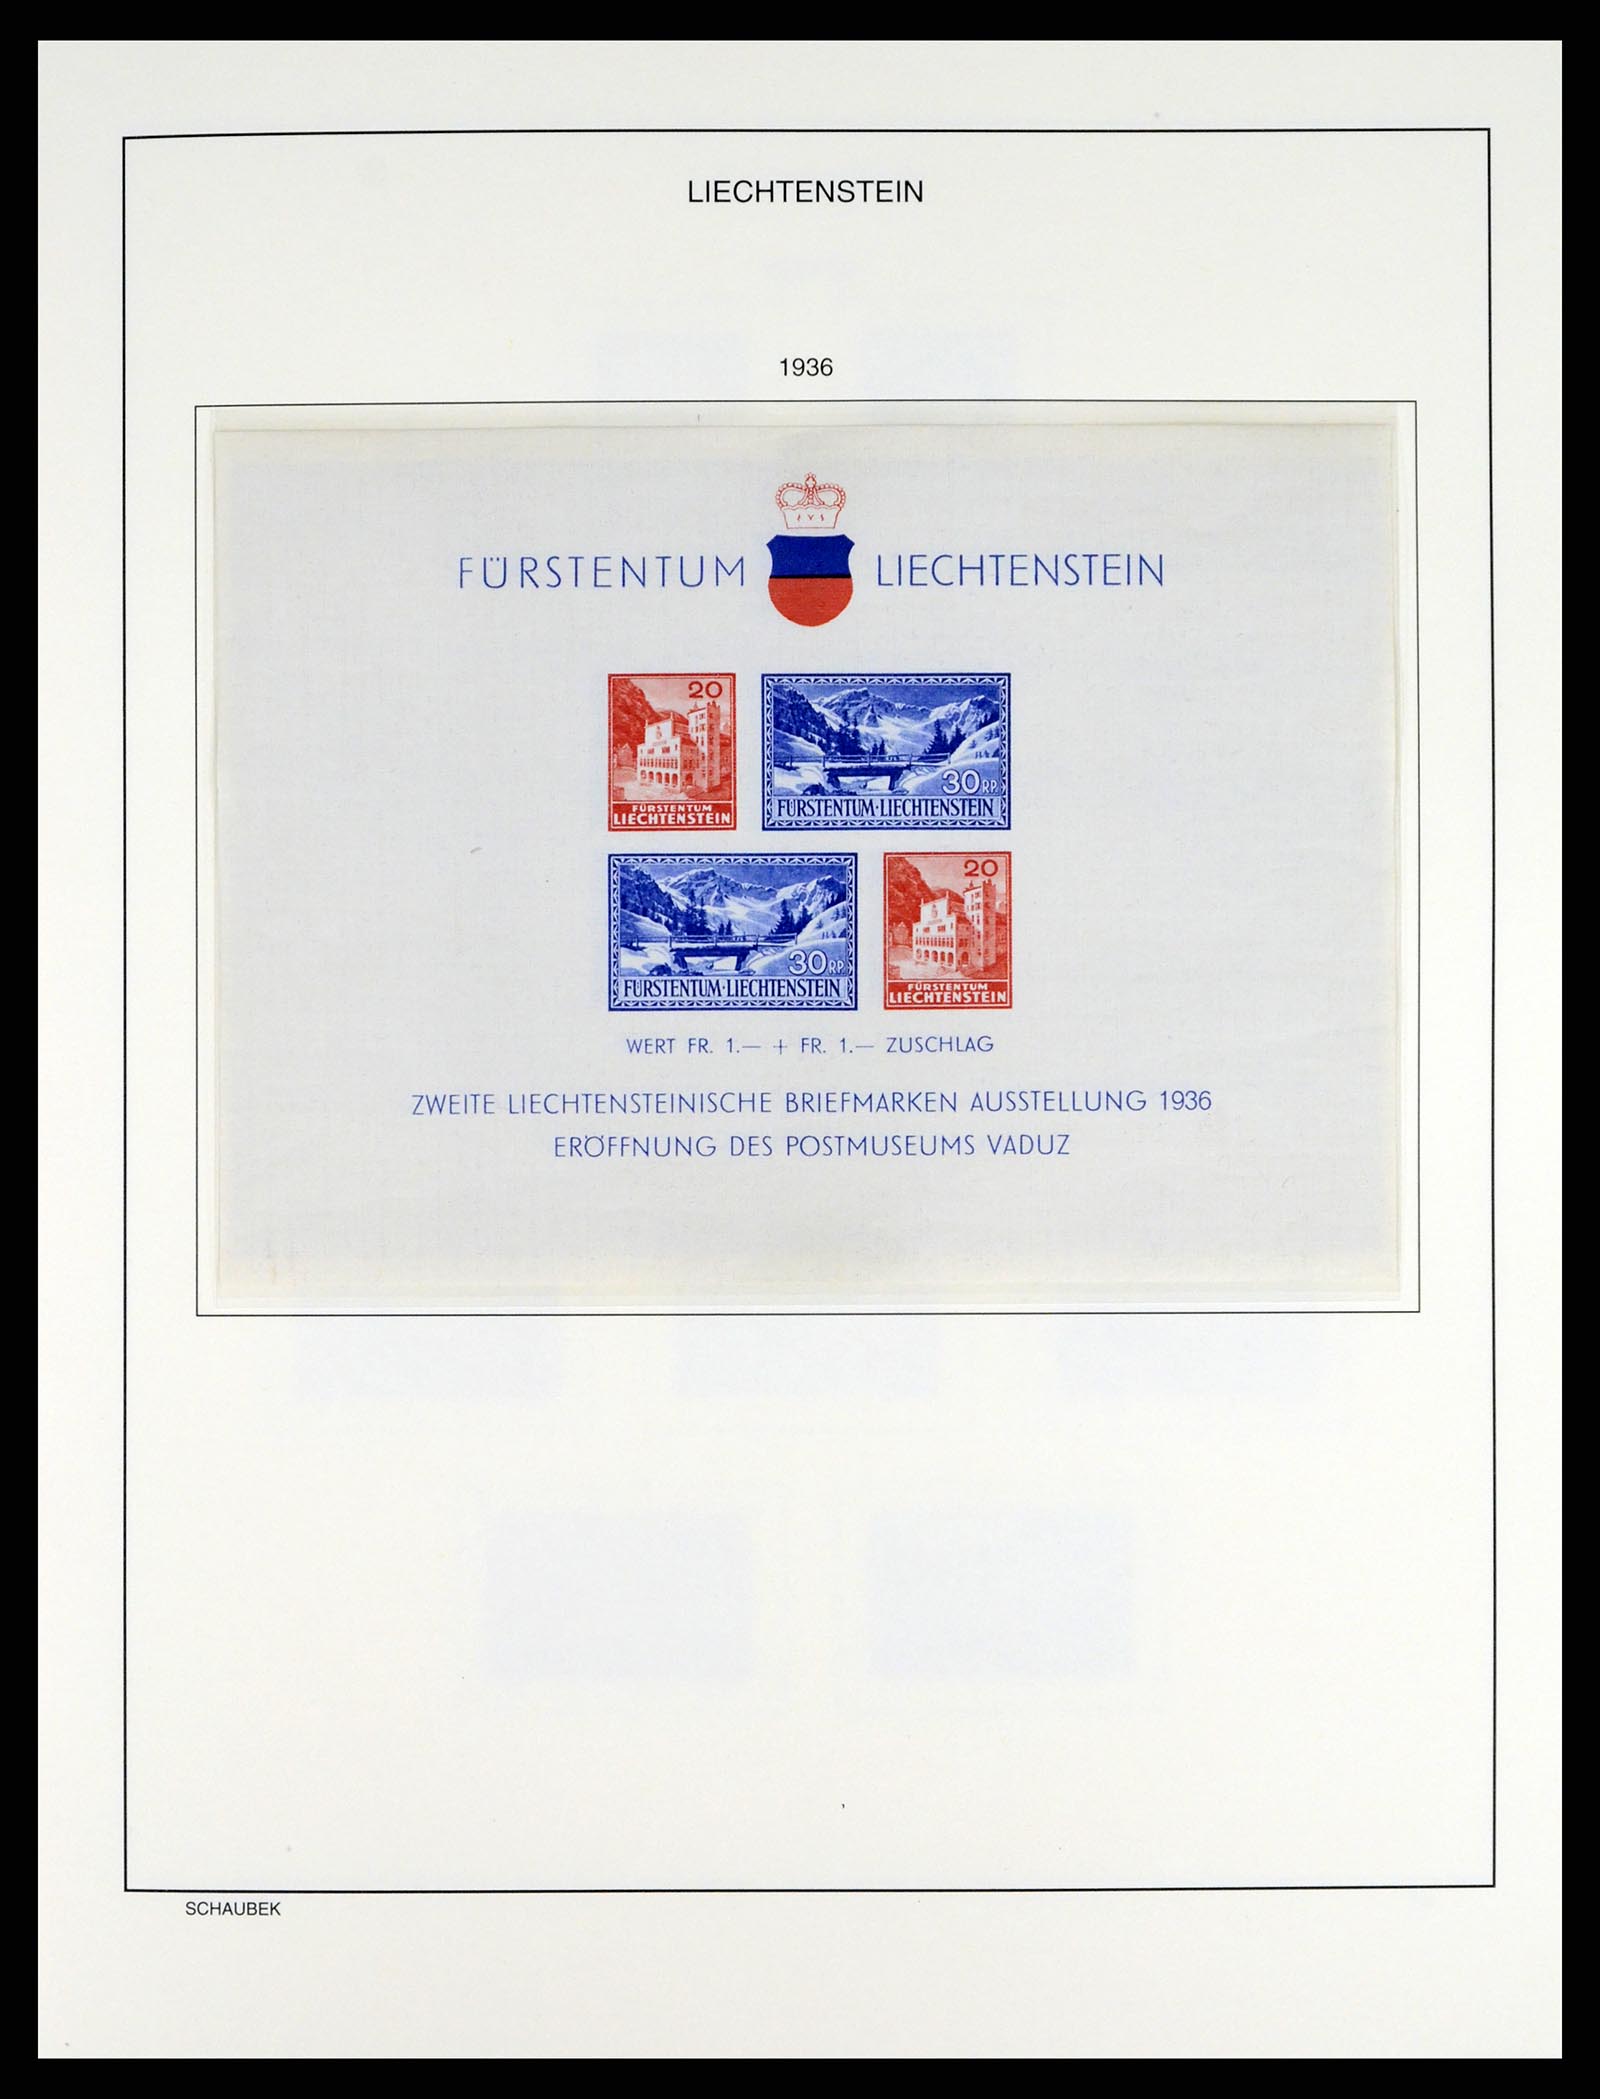 37547 016 - Stamp collection 37547 Liechtenstein 1912-2011.